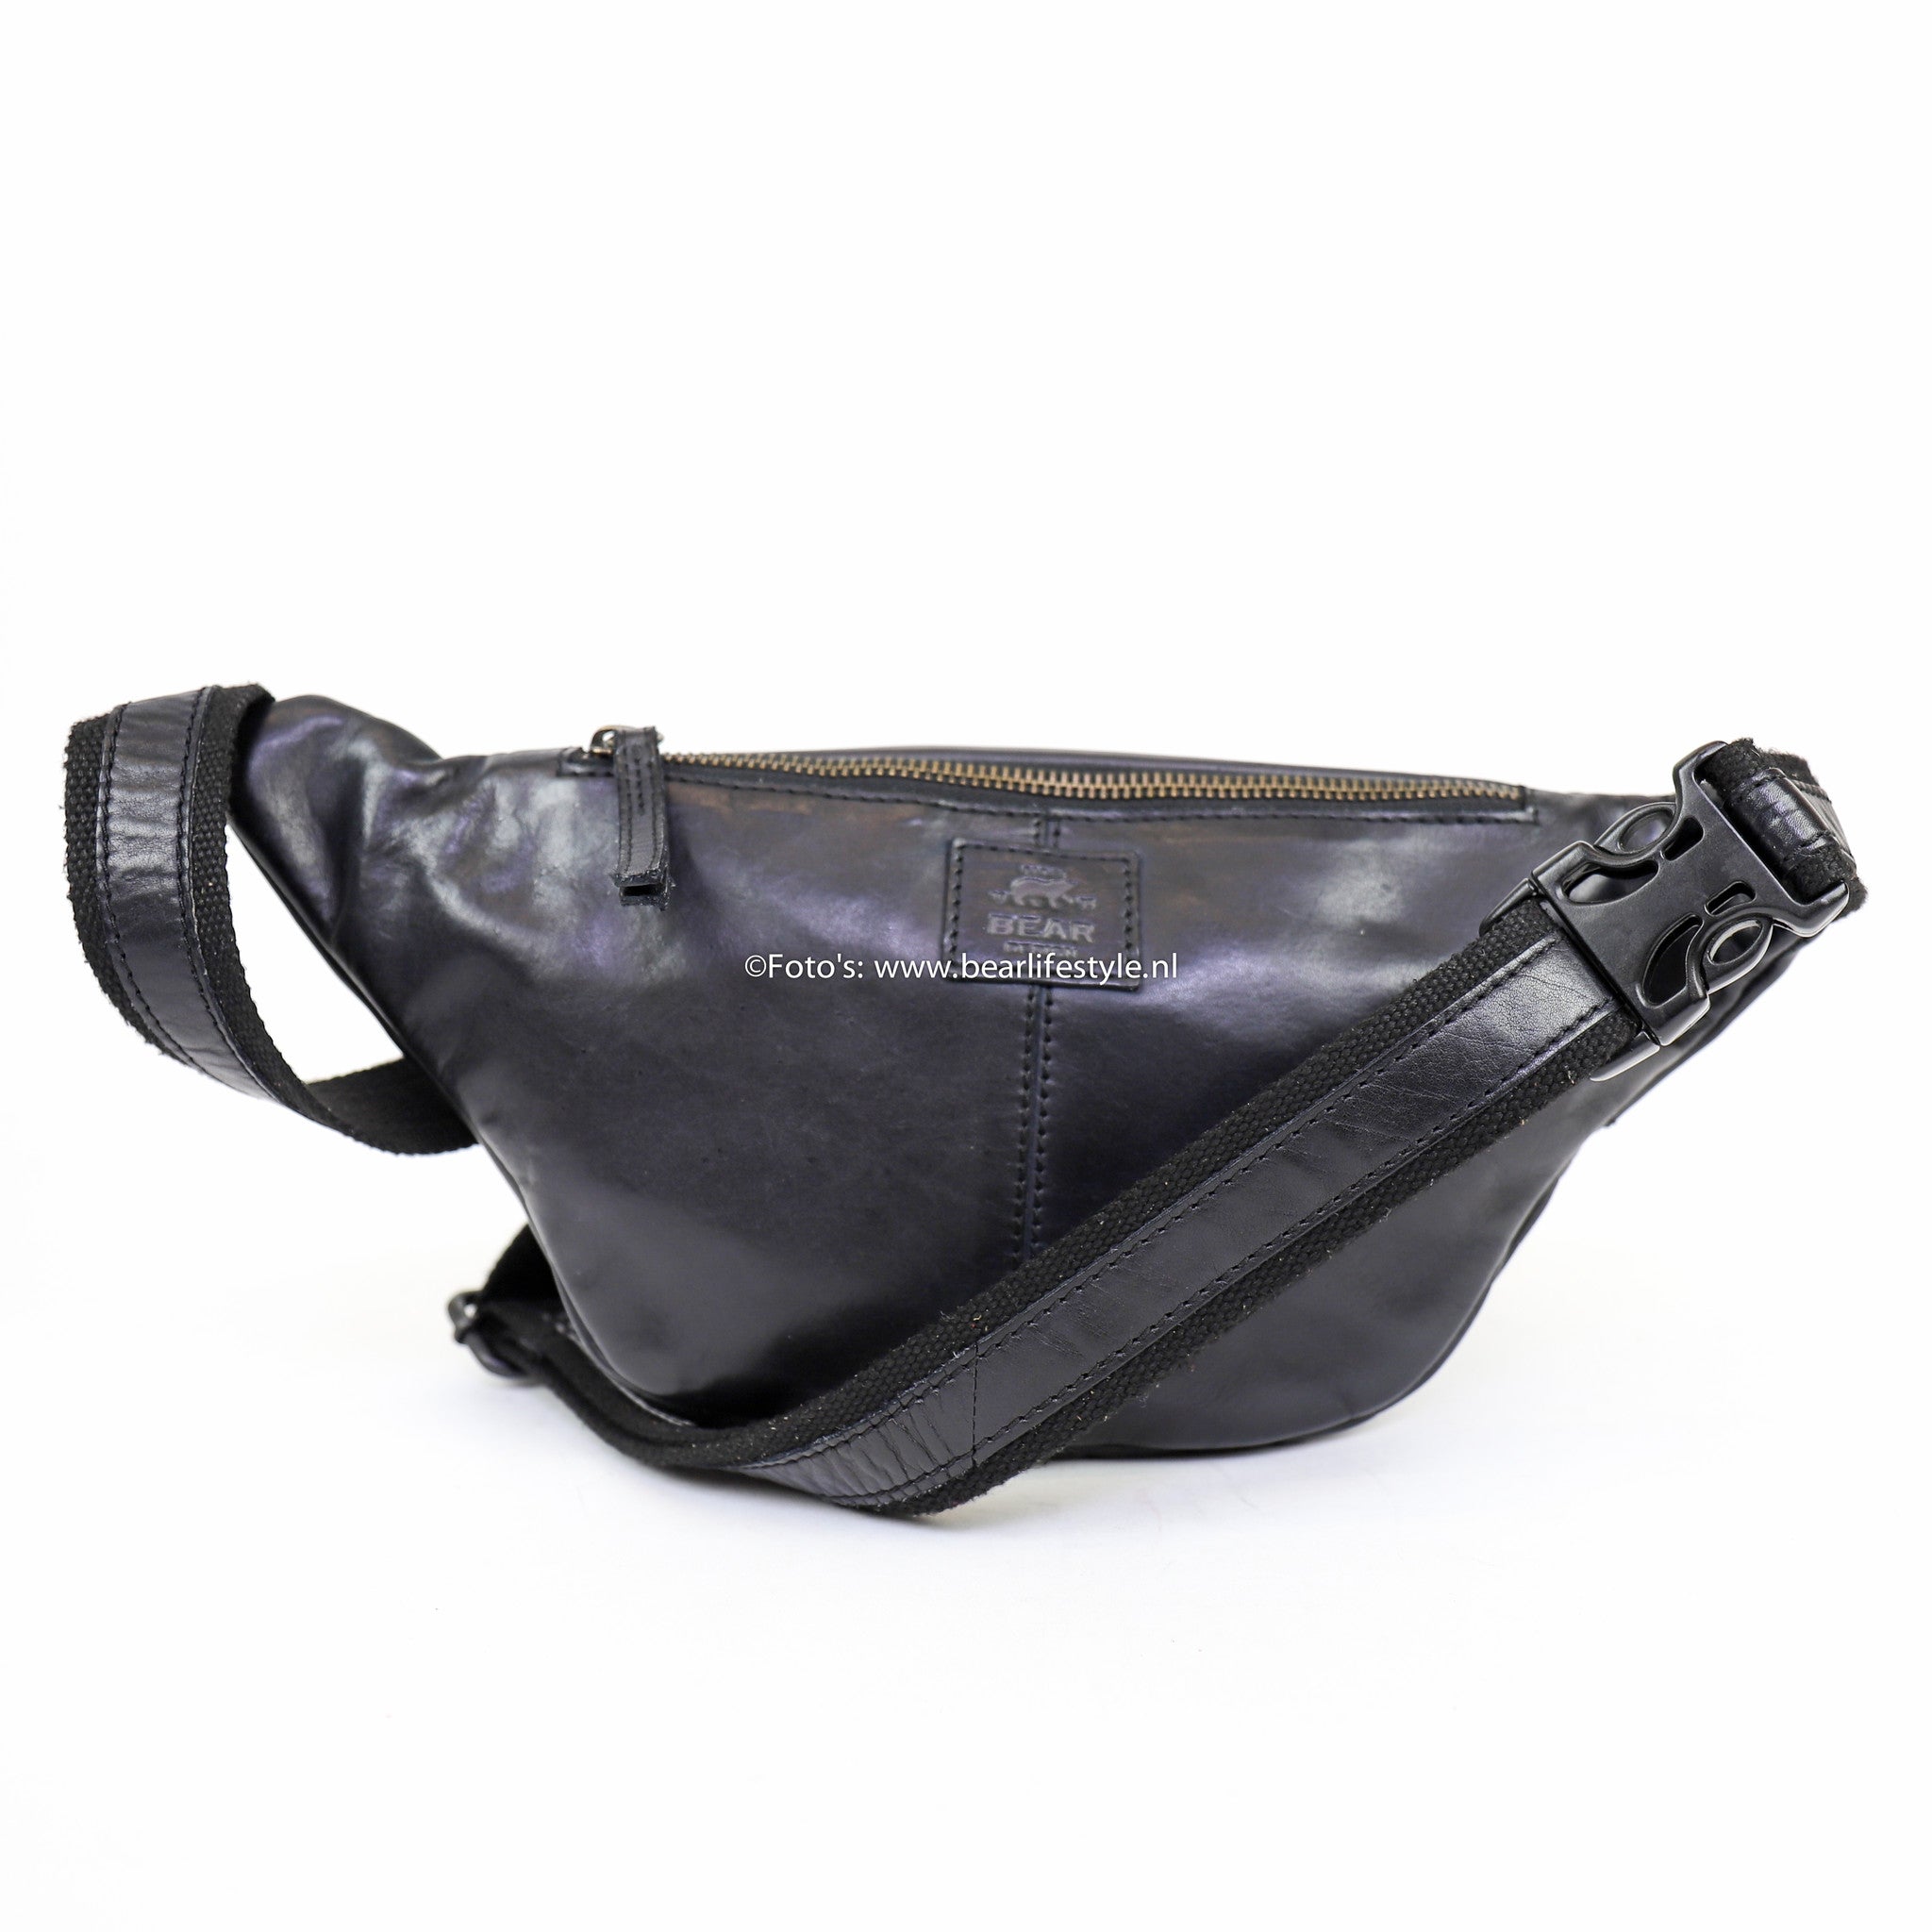 Belt bag 'Matt' black - CL 36492